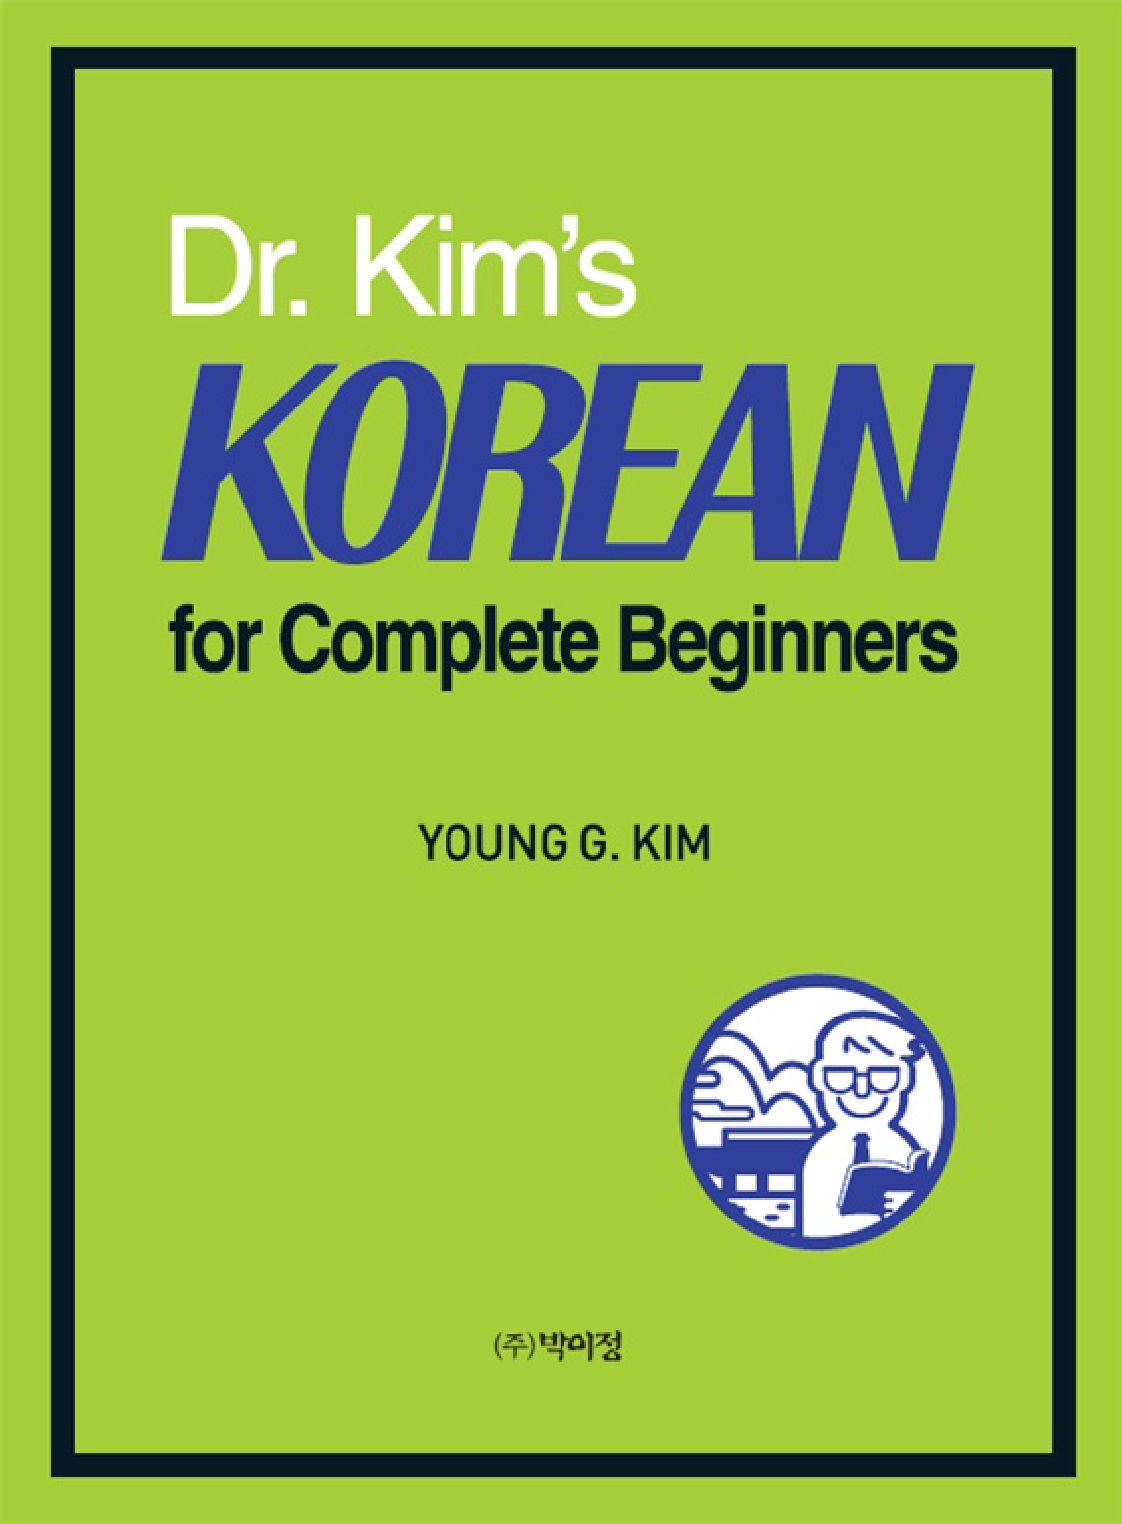 Dr. Kim's Korean for Complete Beginners